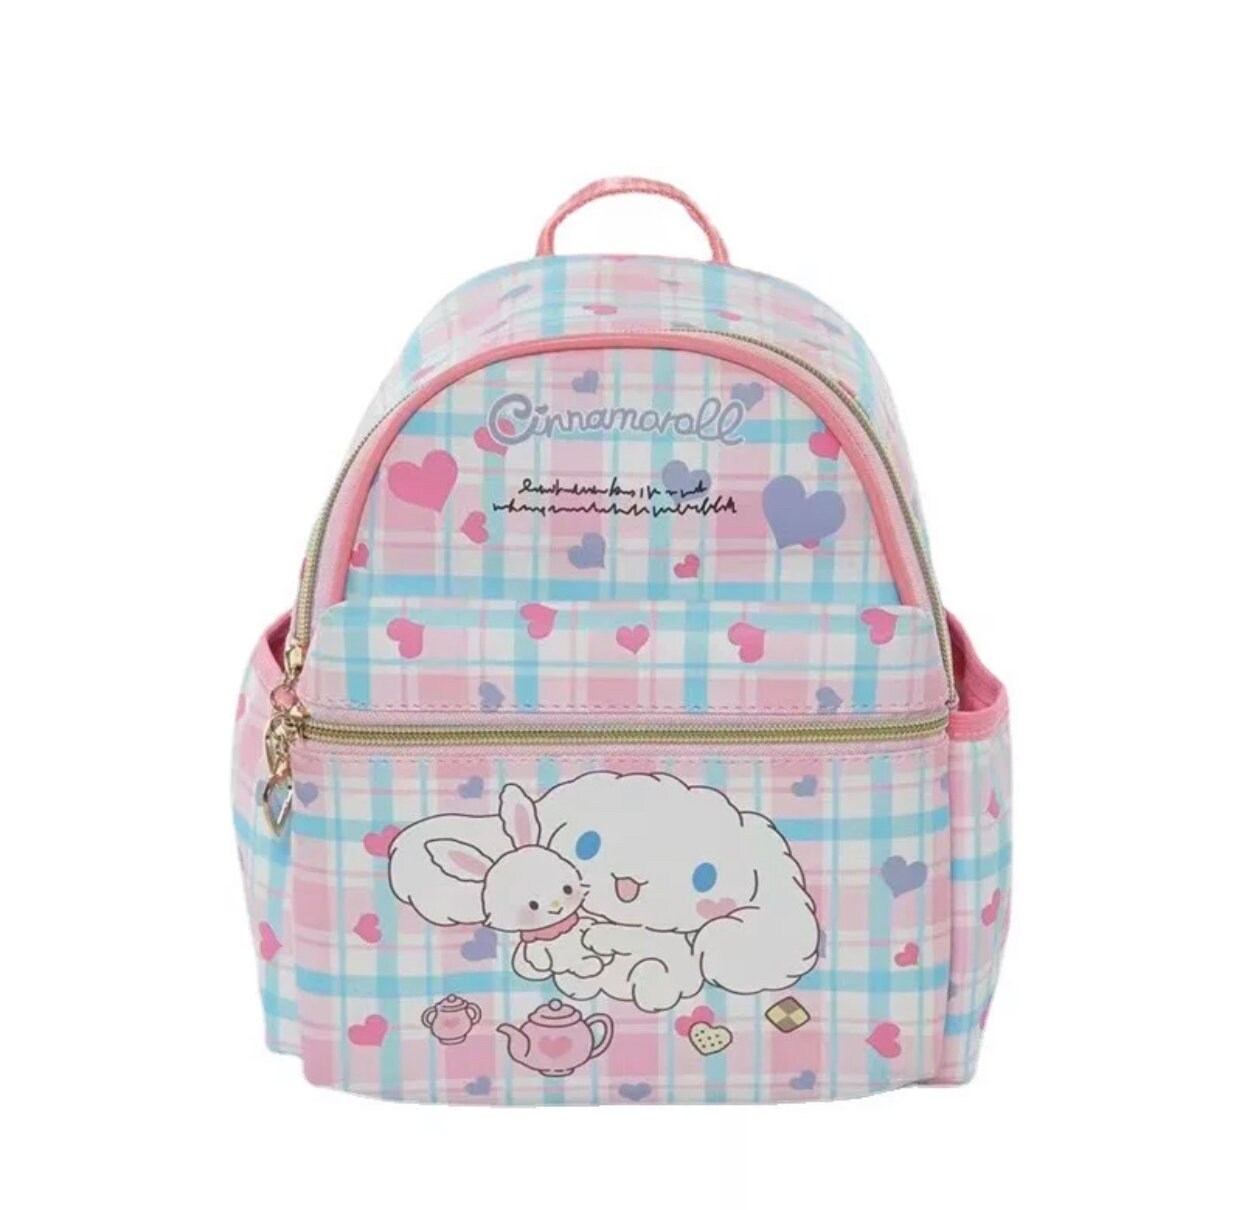 Kawaii |Backpacks| Pastel | Cute| (Varying Styles)